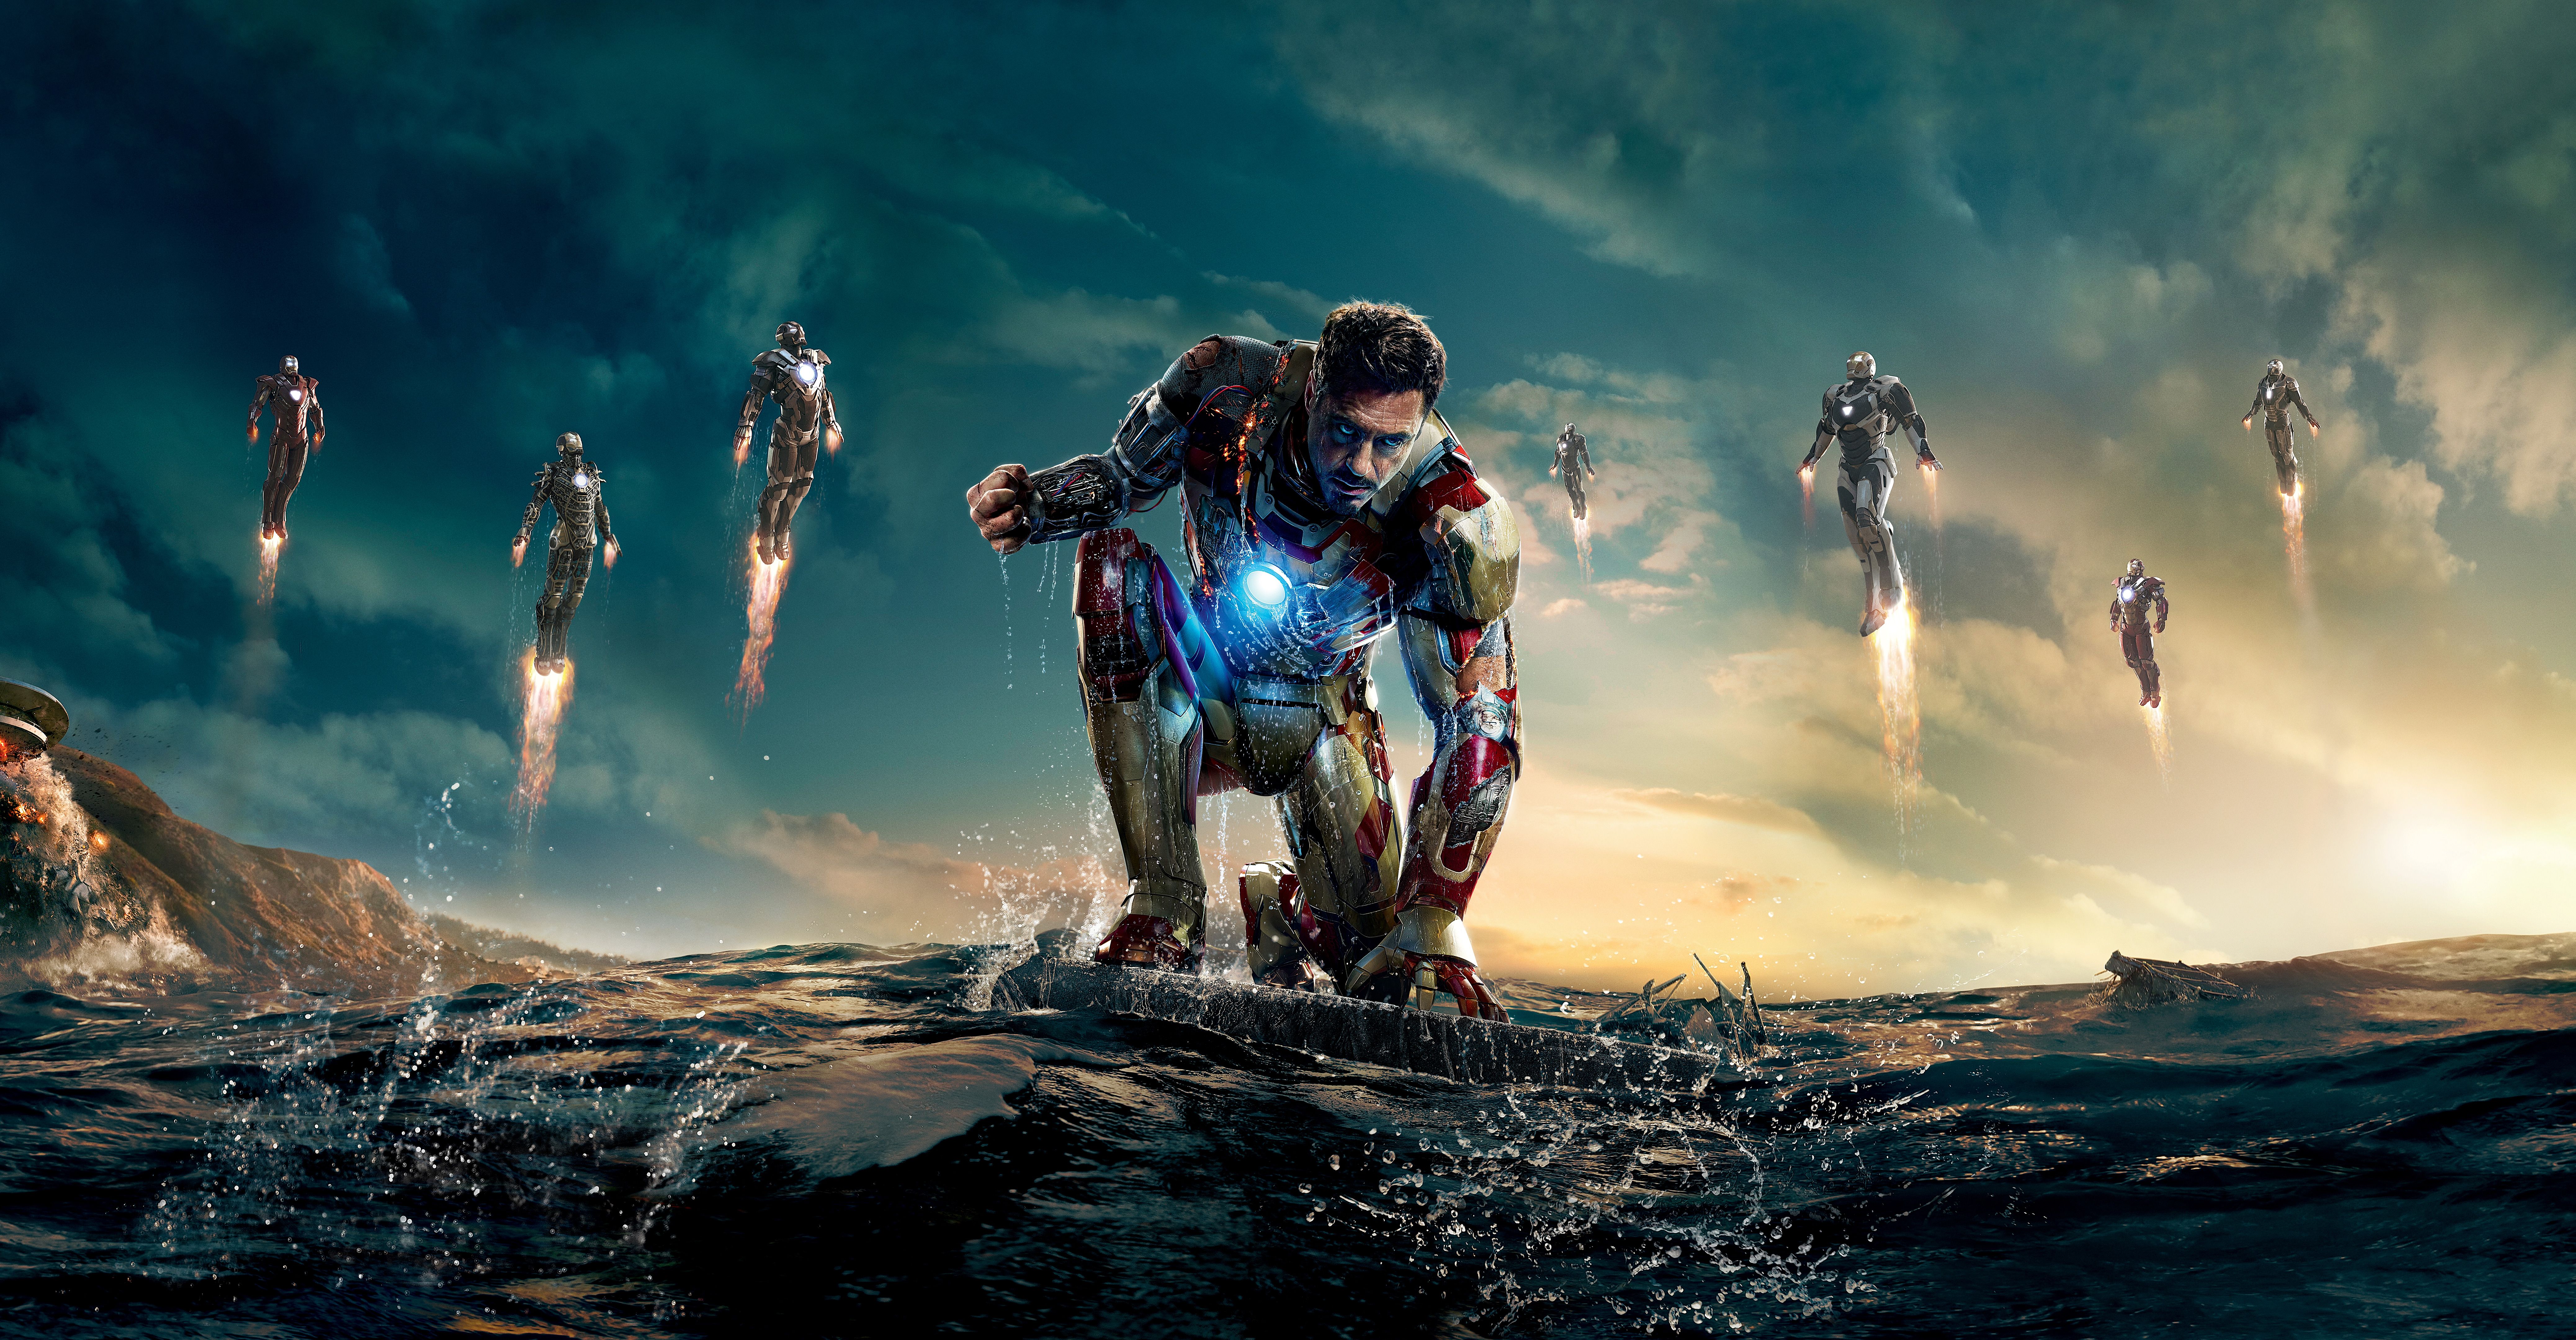 Free download Iron Man 4K Wallpapers Top Iron Man 4K ...